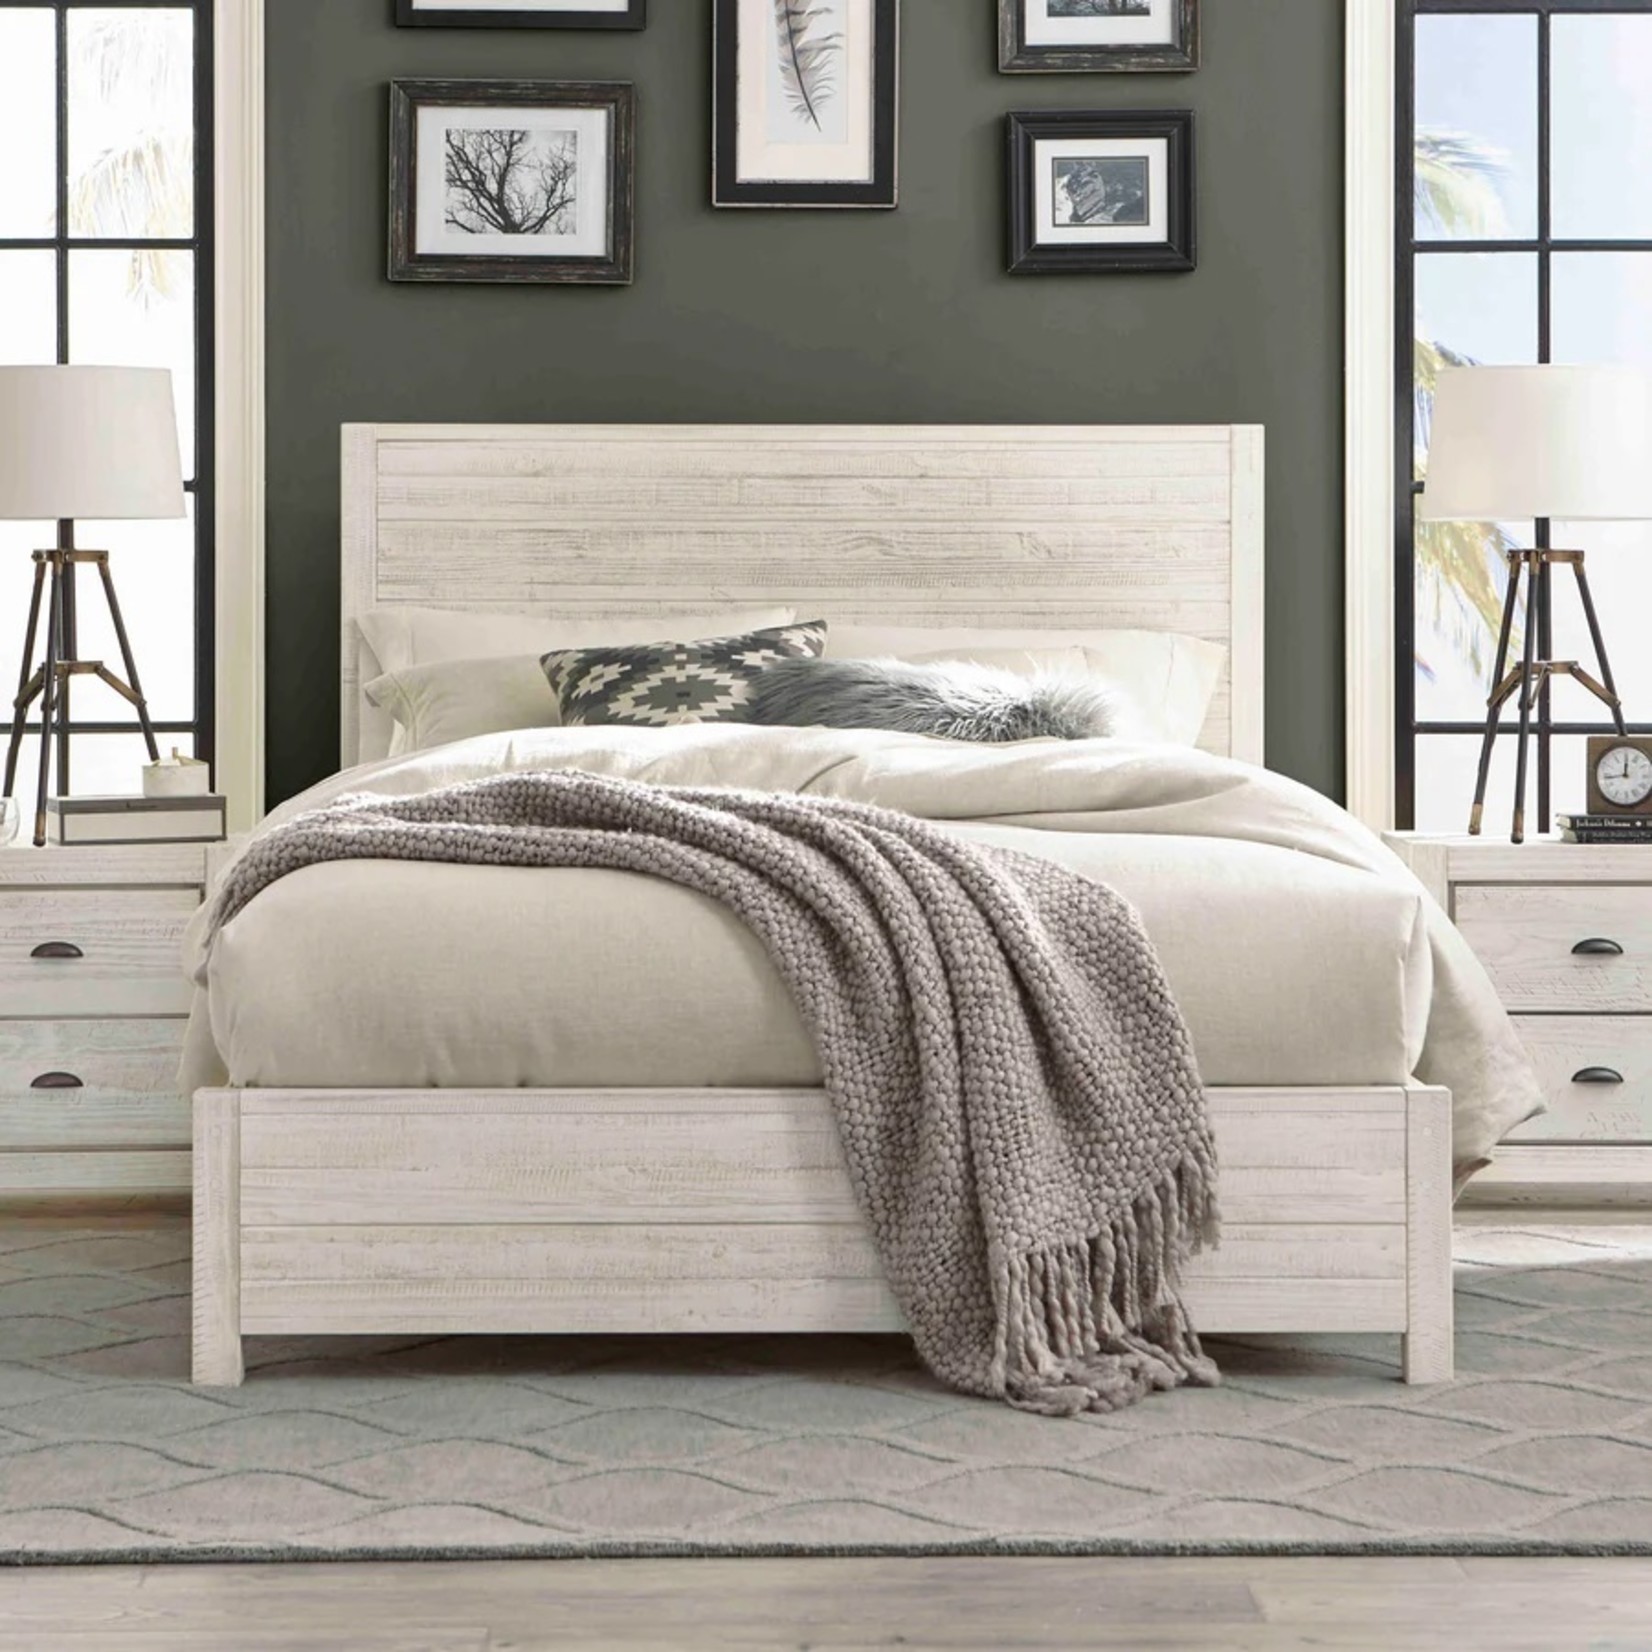 GrainWood Montauk Queen Panel Bed /Rustic Off White